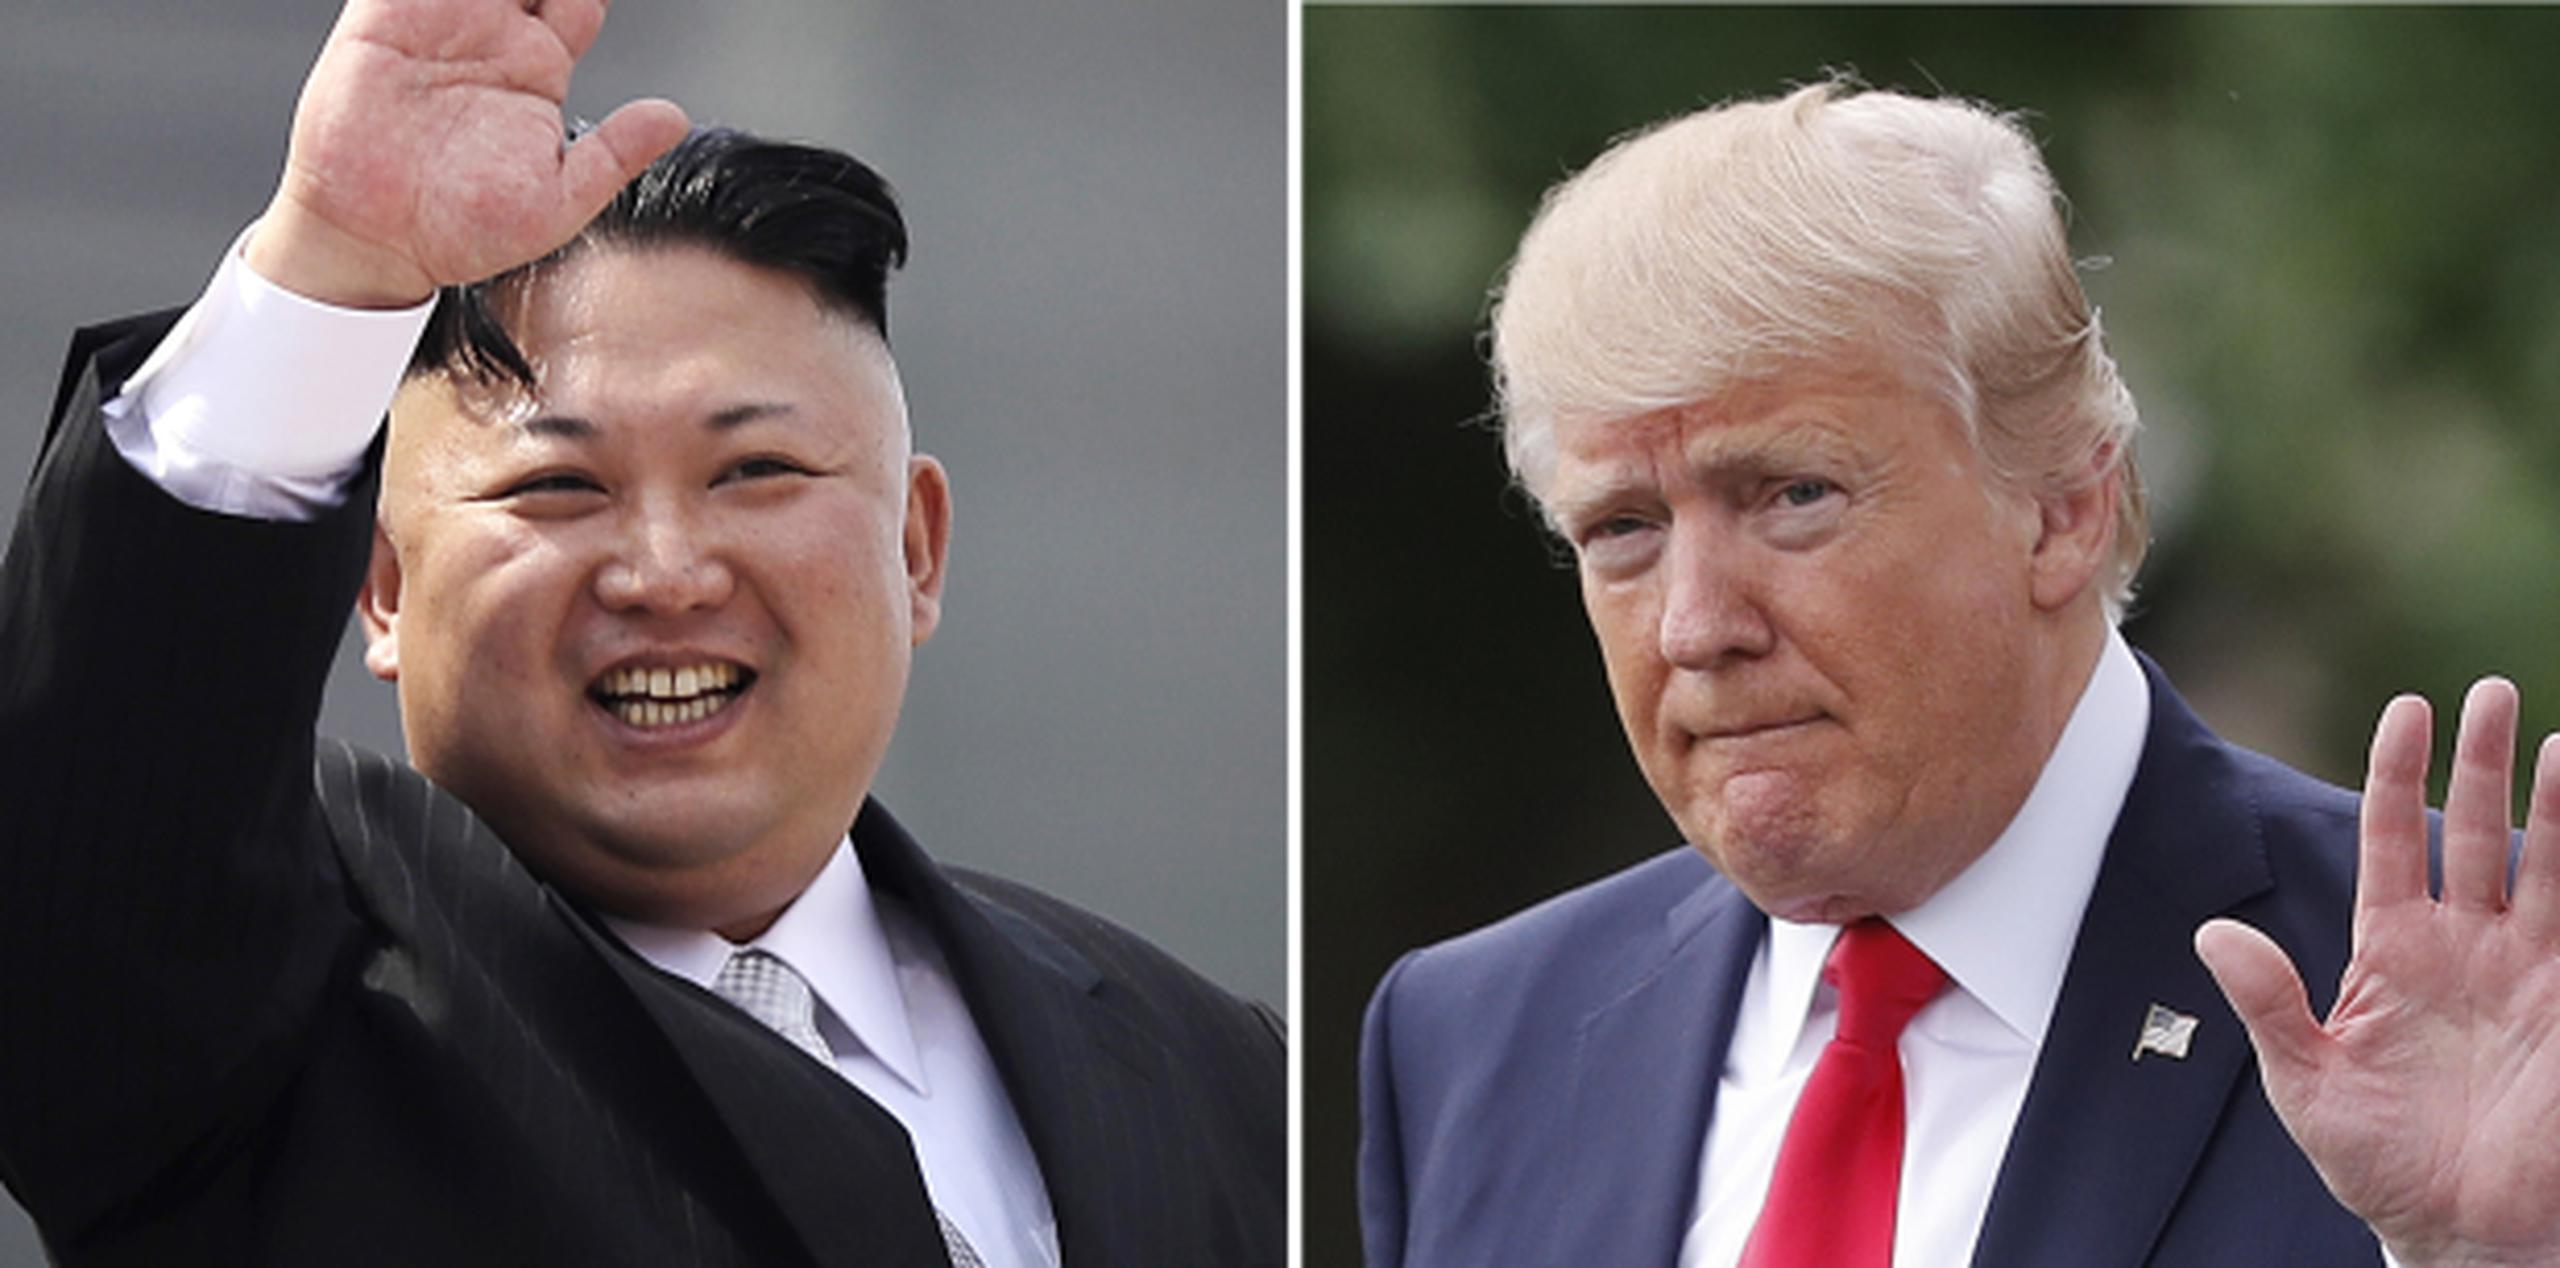 Recientemente, el presidente estadounidense, Donald Trump, amenazó con desplegar “fuego y furia” contra el país que lidera Kim Jong-un si continuaba con sus amenazas. (Archivo)